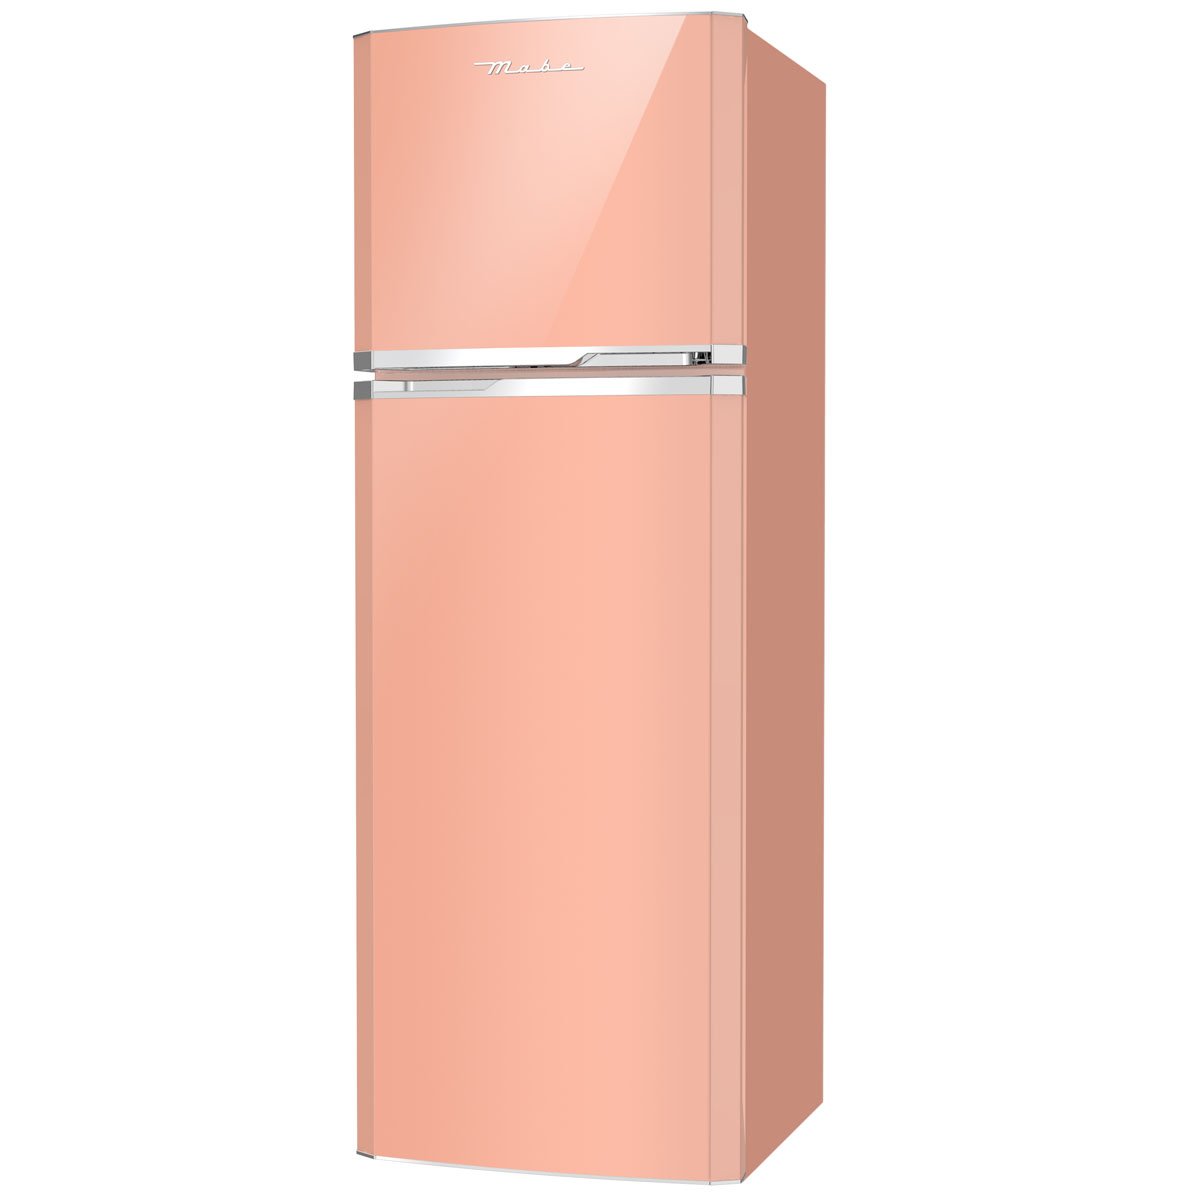 Refrigerador Retro 2 Puertas 10 Pies Mabe